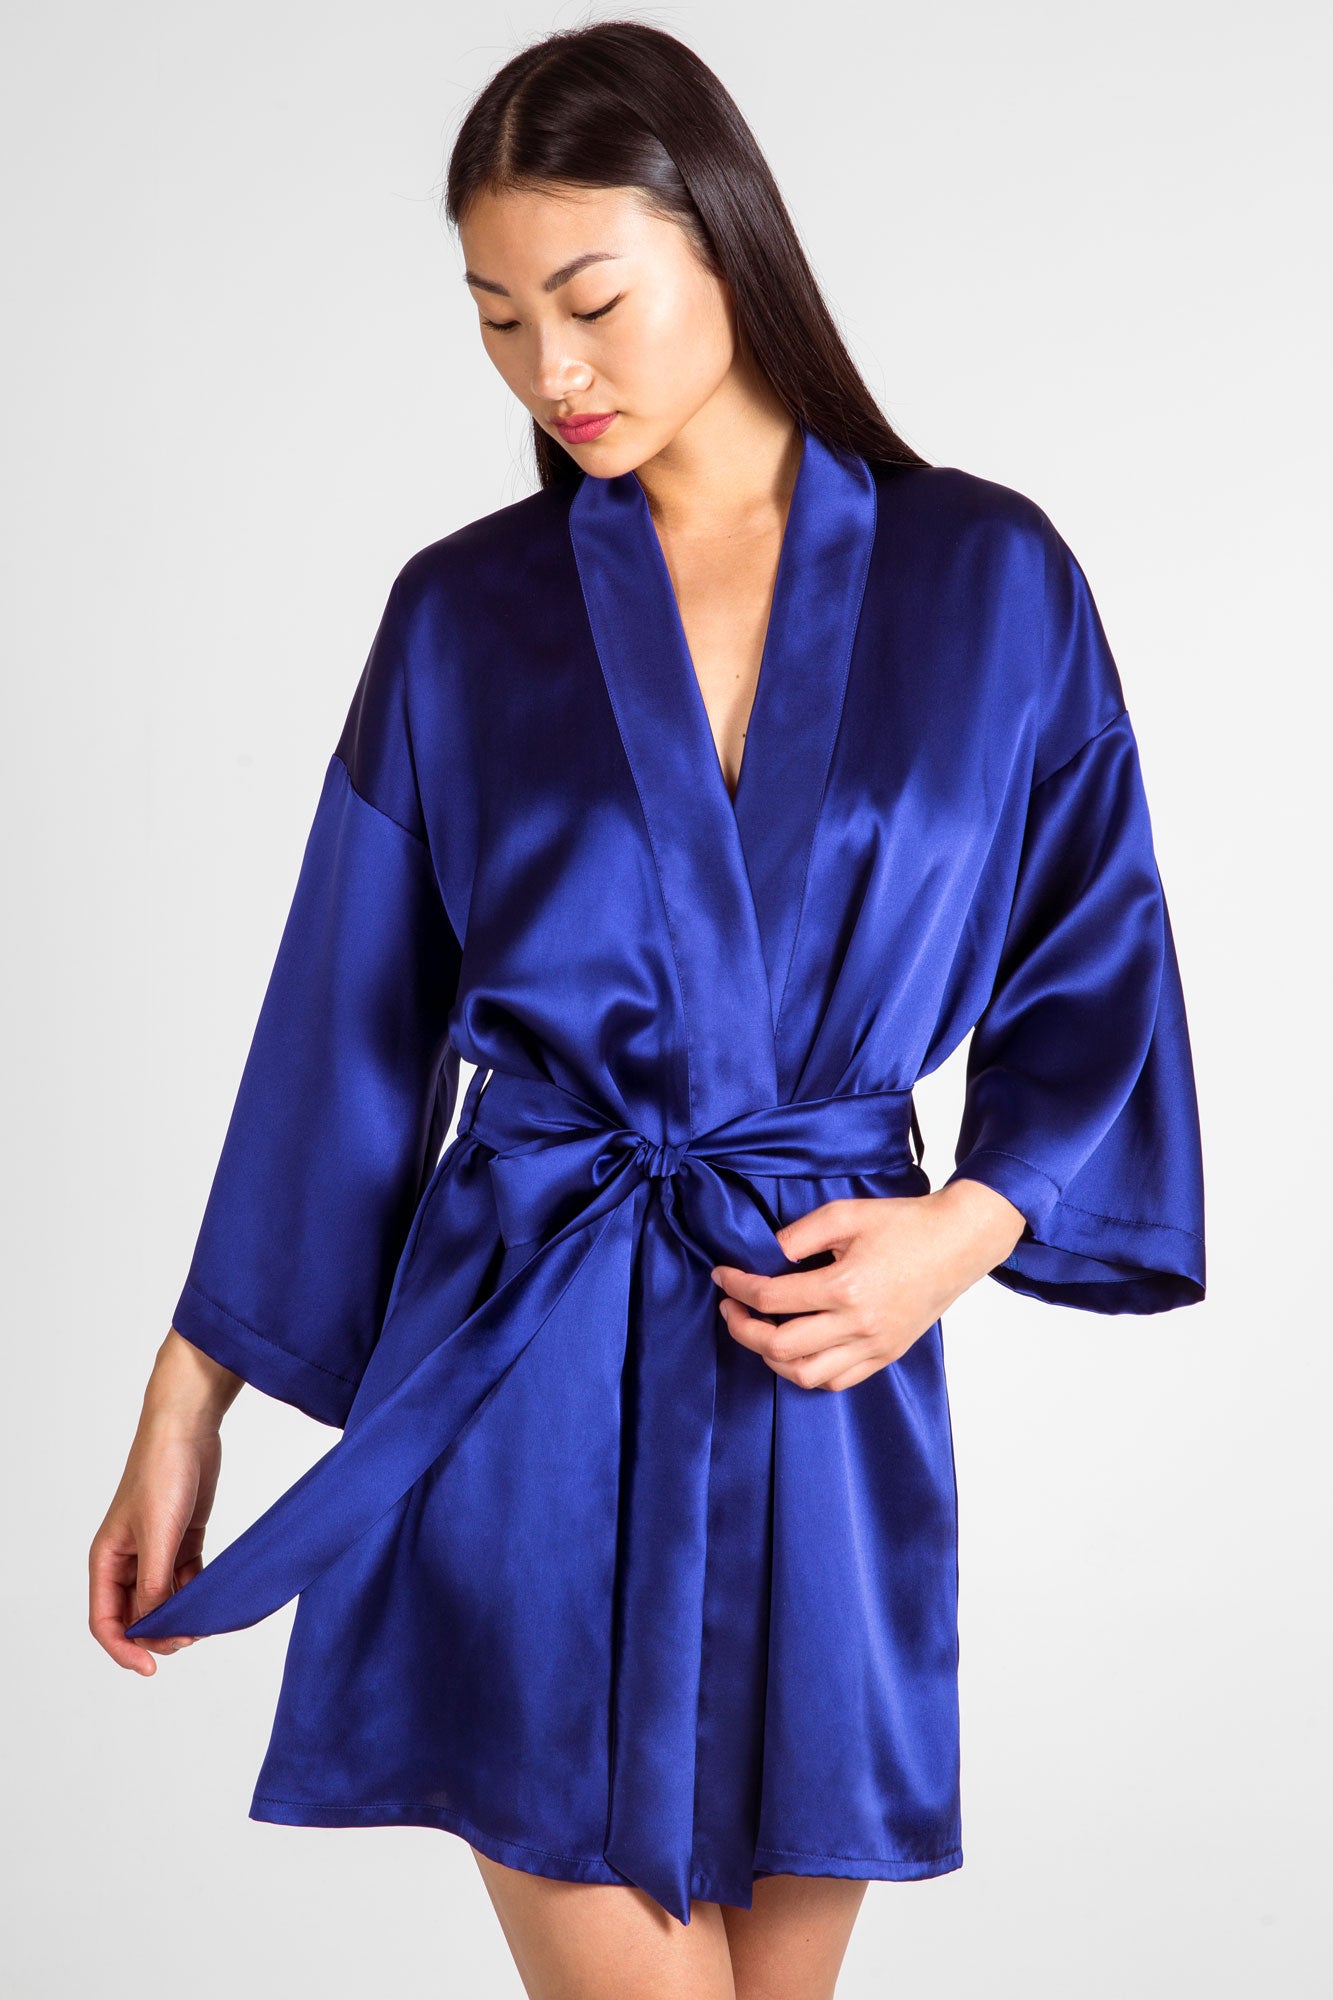 Luxury lounge wear  Designer silk sleep wear and robes